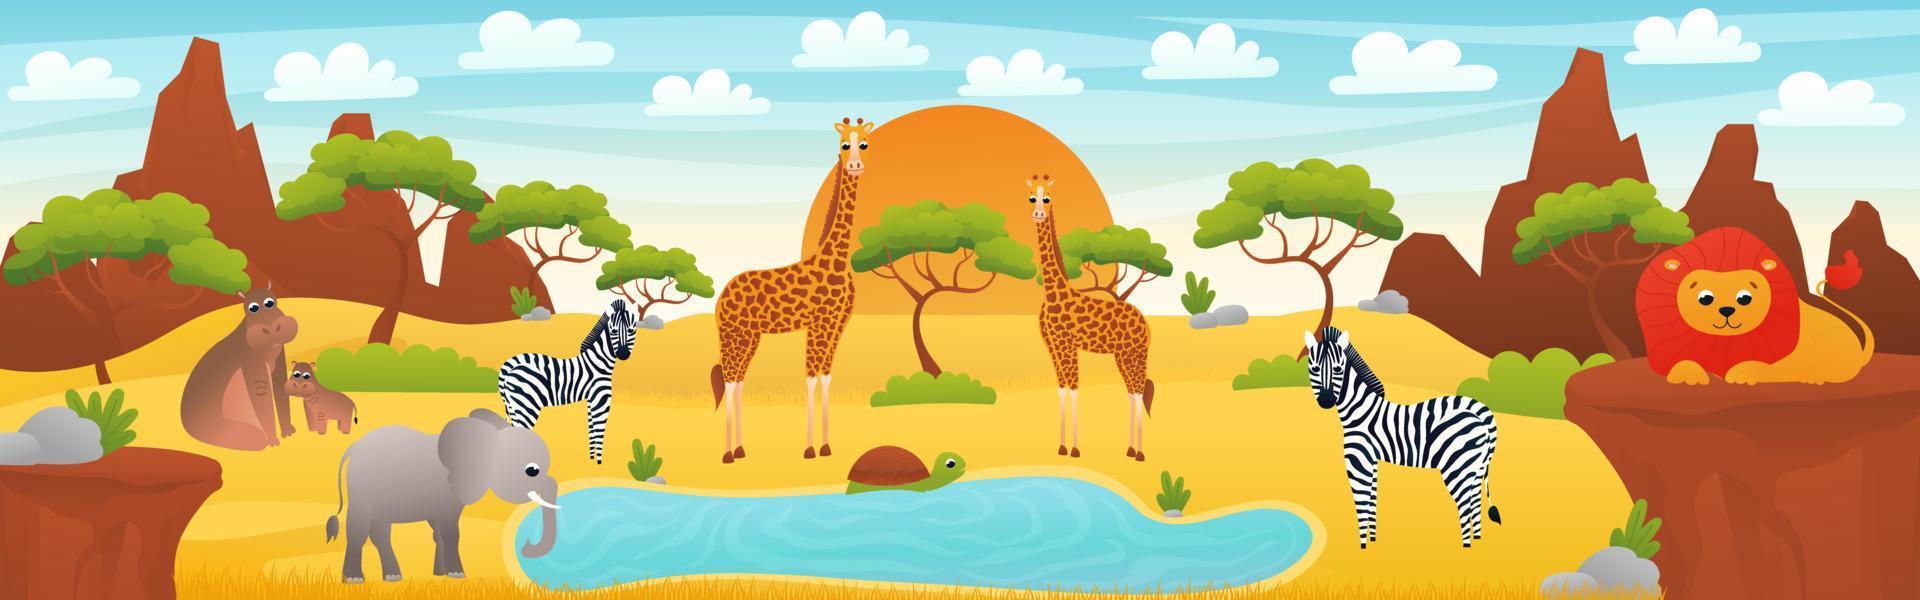 paisaje africano con lindos animales de dibujos animados - elefante, cebra y león, banner web con escena de sabana, exploración del desierto africano, afiche horizontal del zoológico para imprimir vector